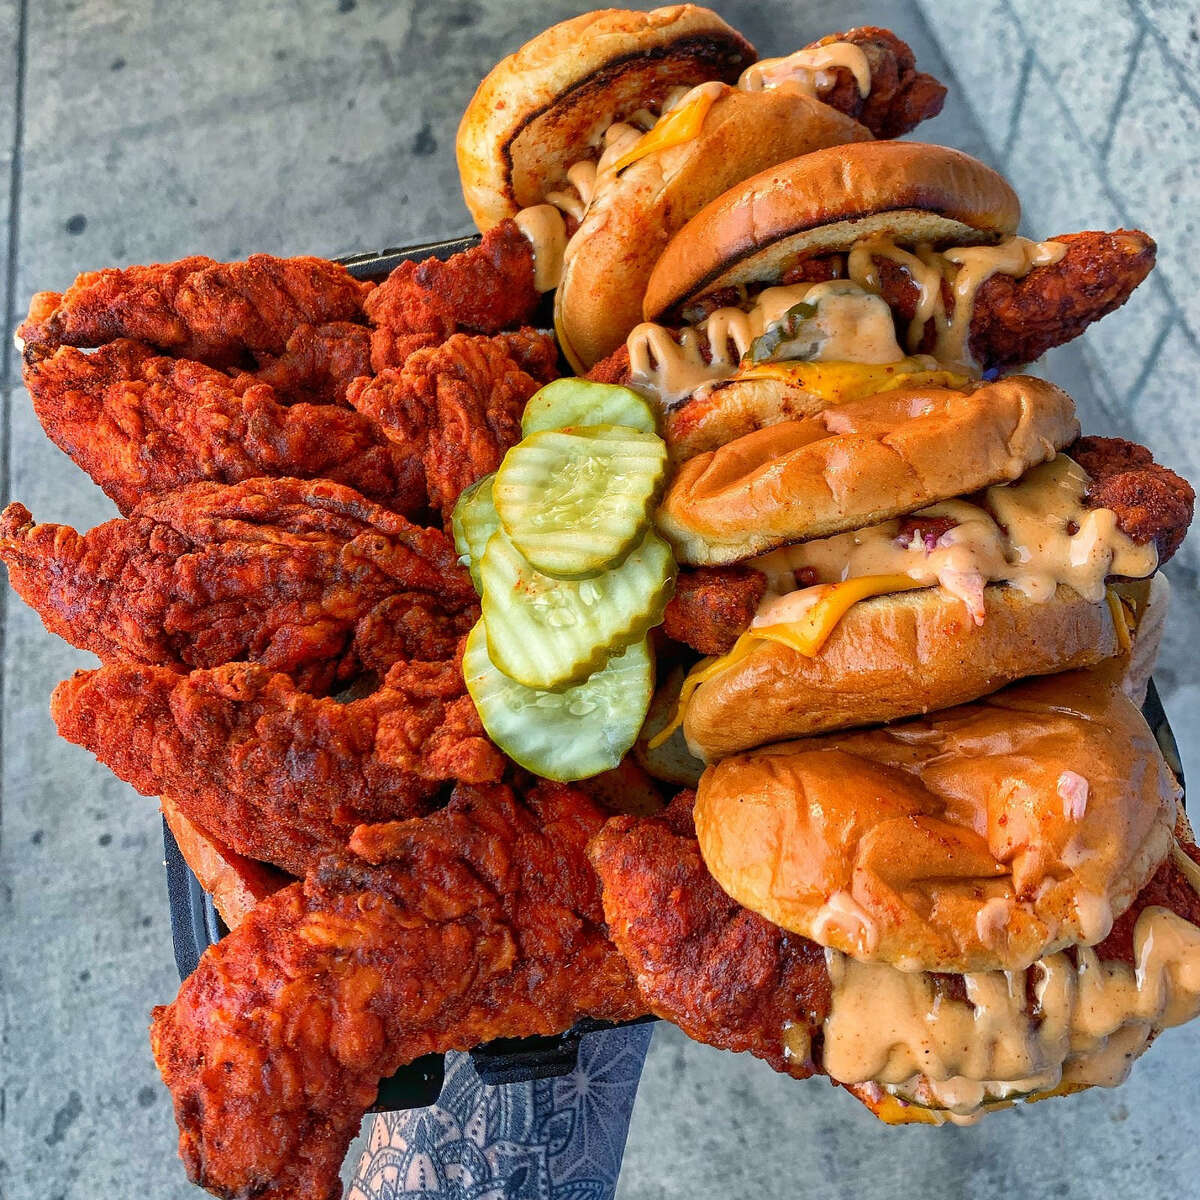 Dave's Hot Chicken, que hizo su debut en Oakland en 2228 Broadway el viernes, es conocido por sus filetes de pollo caliente al estilo de Nashville y sus controles deslizantes.